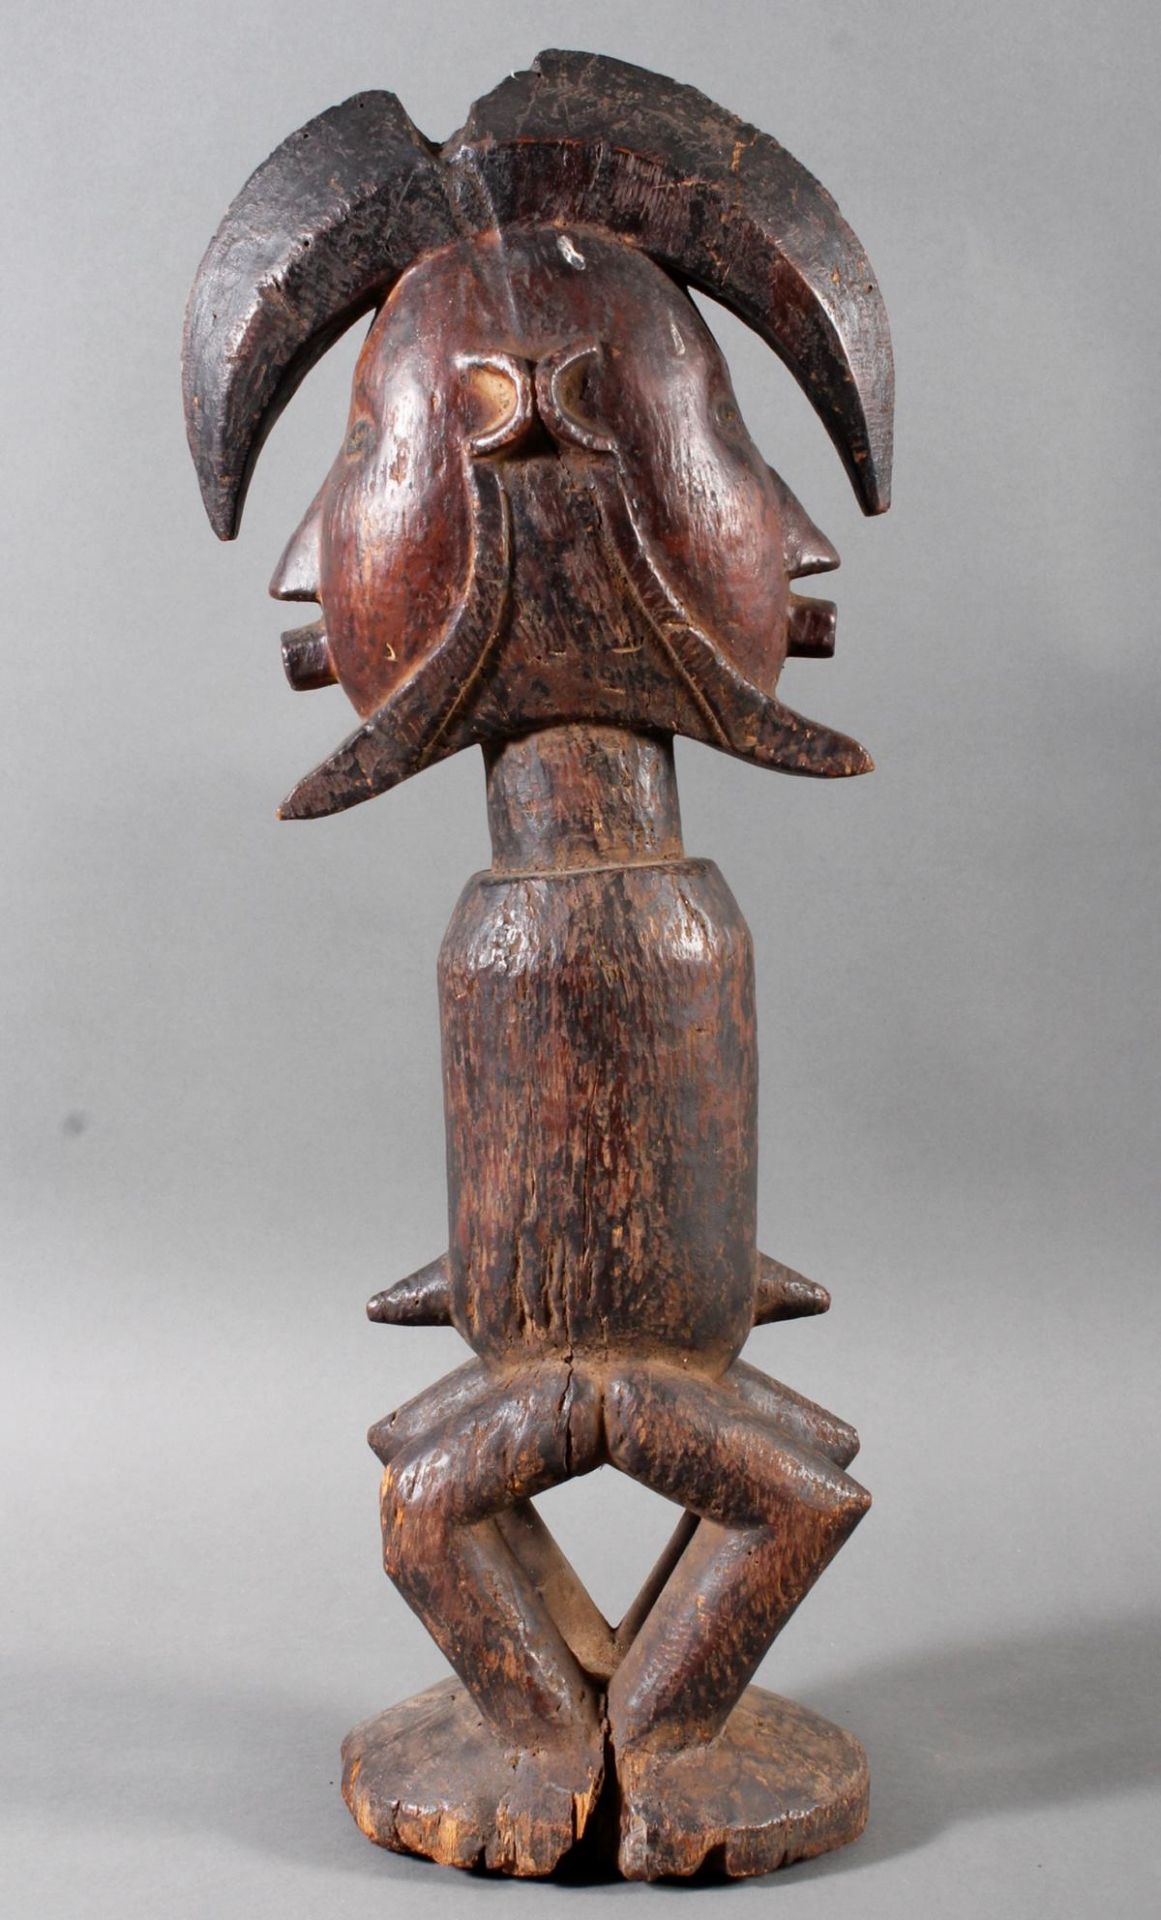 Stehende Janus-Fetischfigur (biteki) vom Stamm der Teke, D.R. Kongo